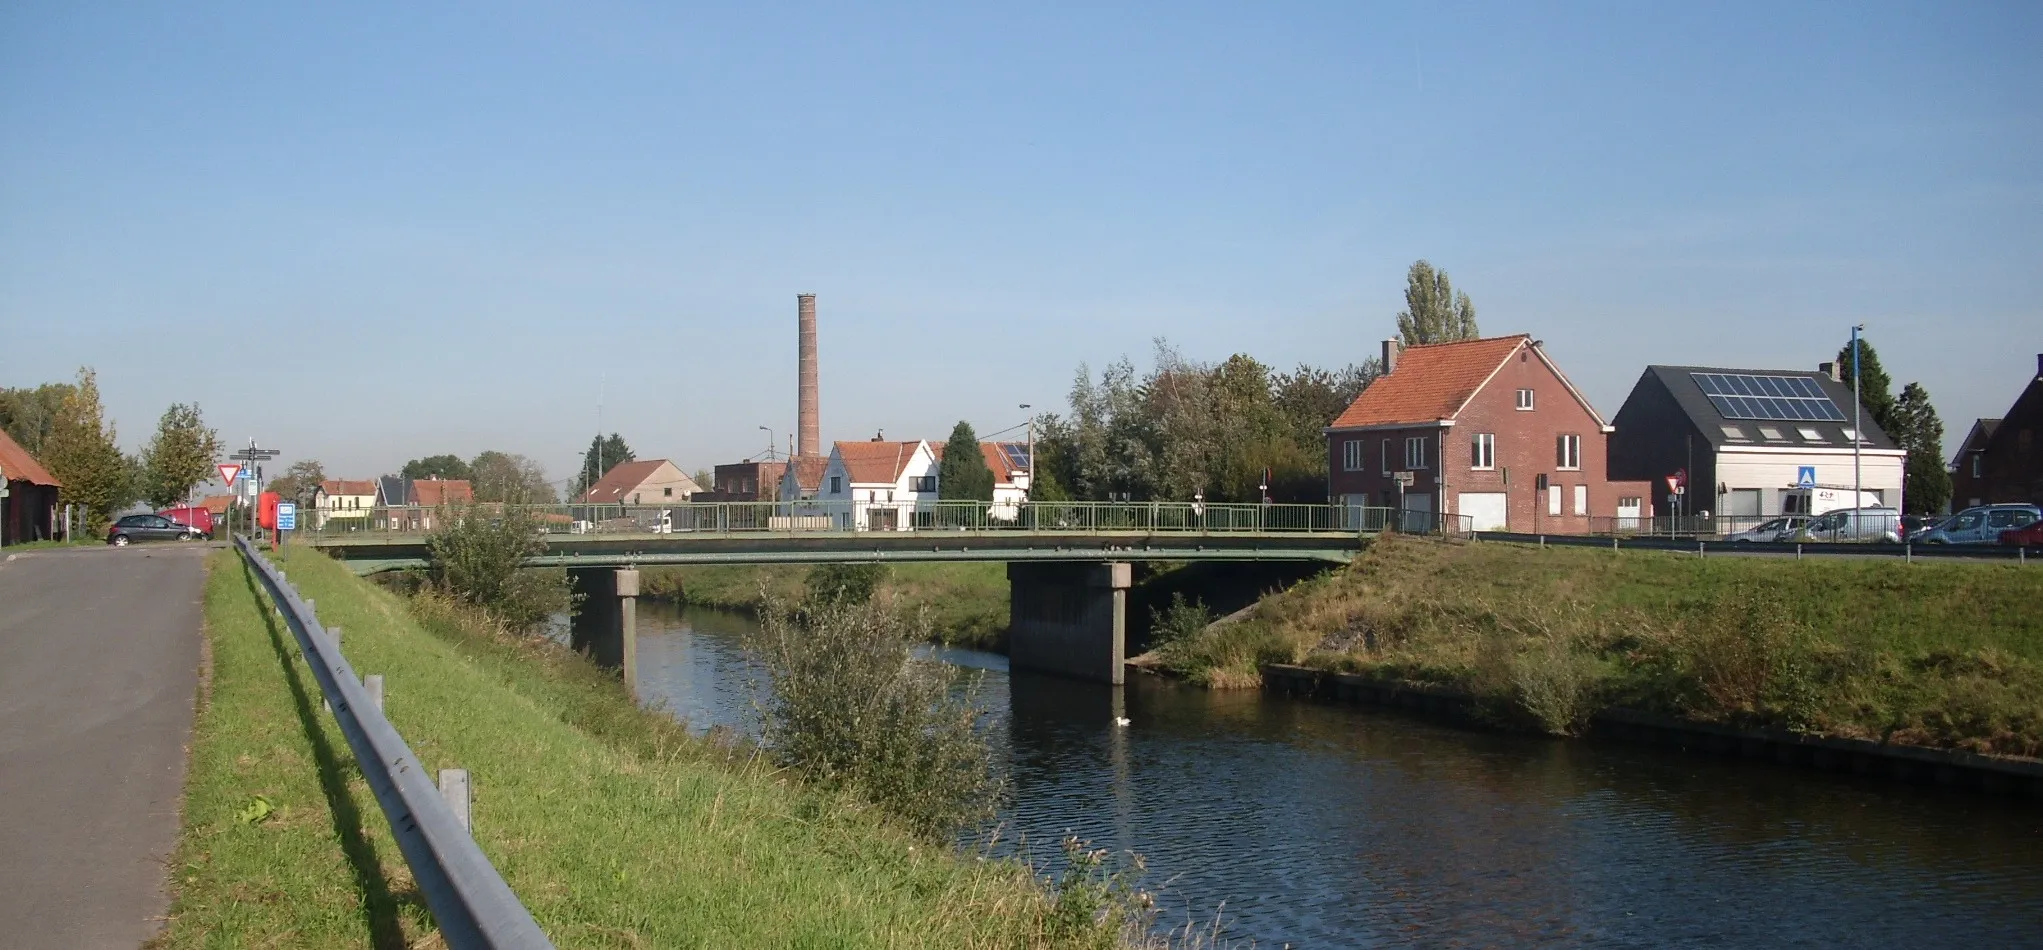 Photo showing: Motjesbrug over het Schipdonkkanaal - verbind het Motje met de Grote Steenweg - Zomergem - Oost-Vlaanderen - België